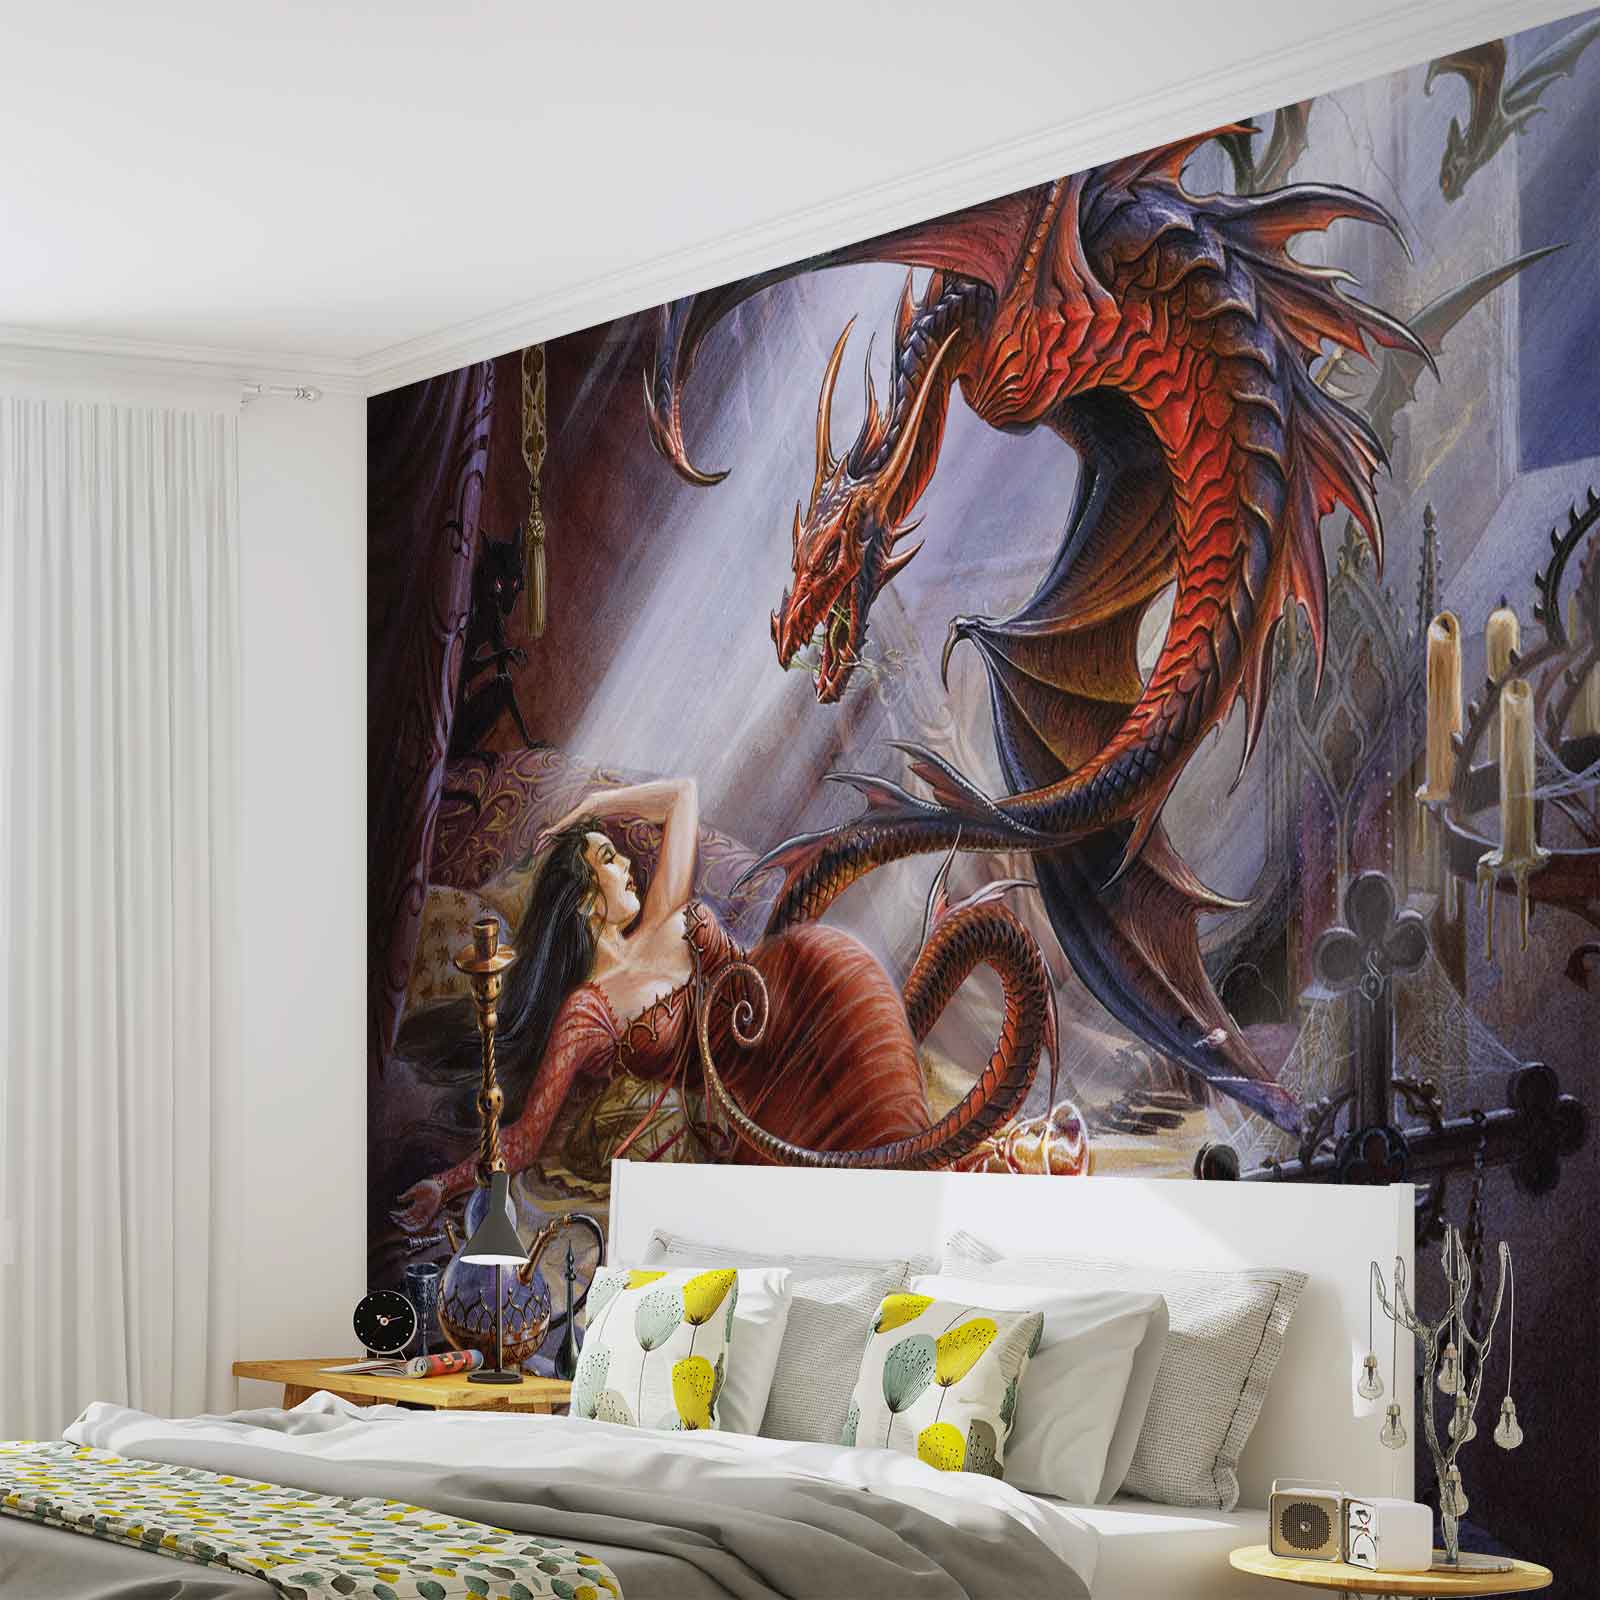 wallpaper xxl,wall,mural,art,room,fictional character